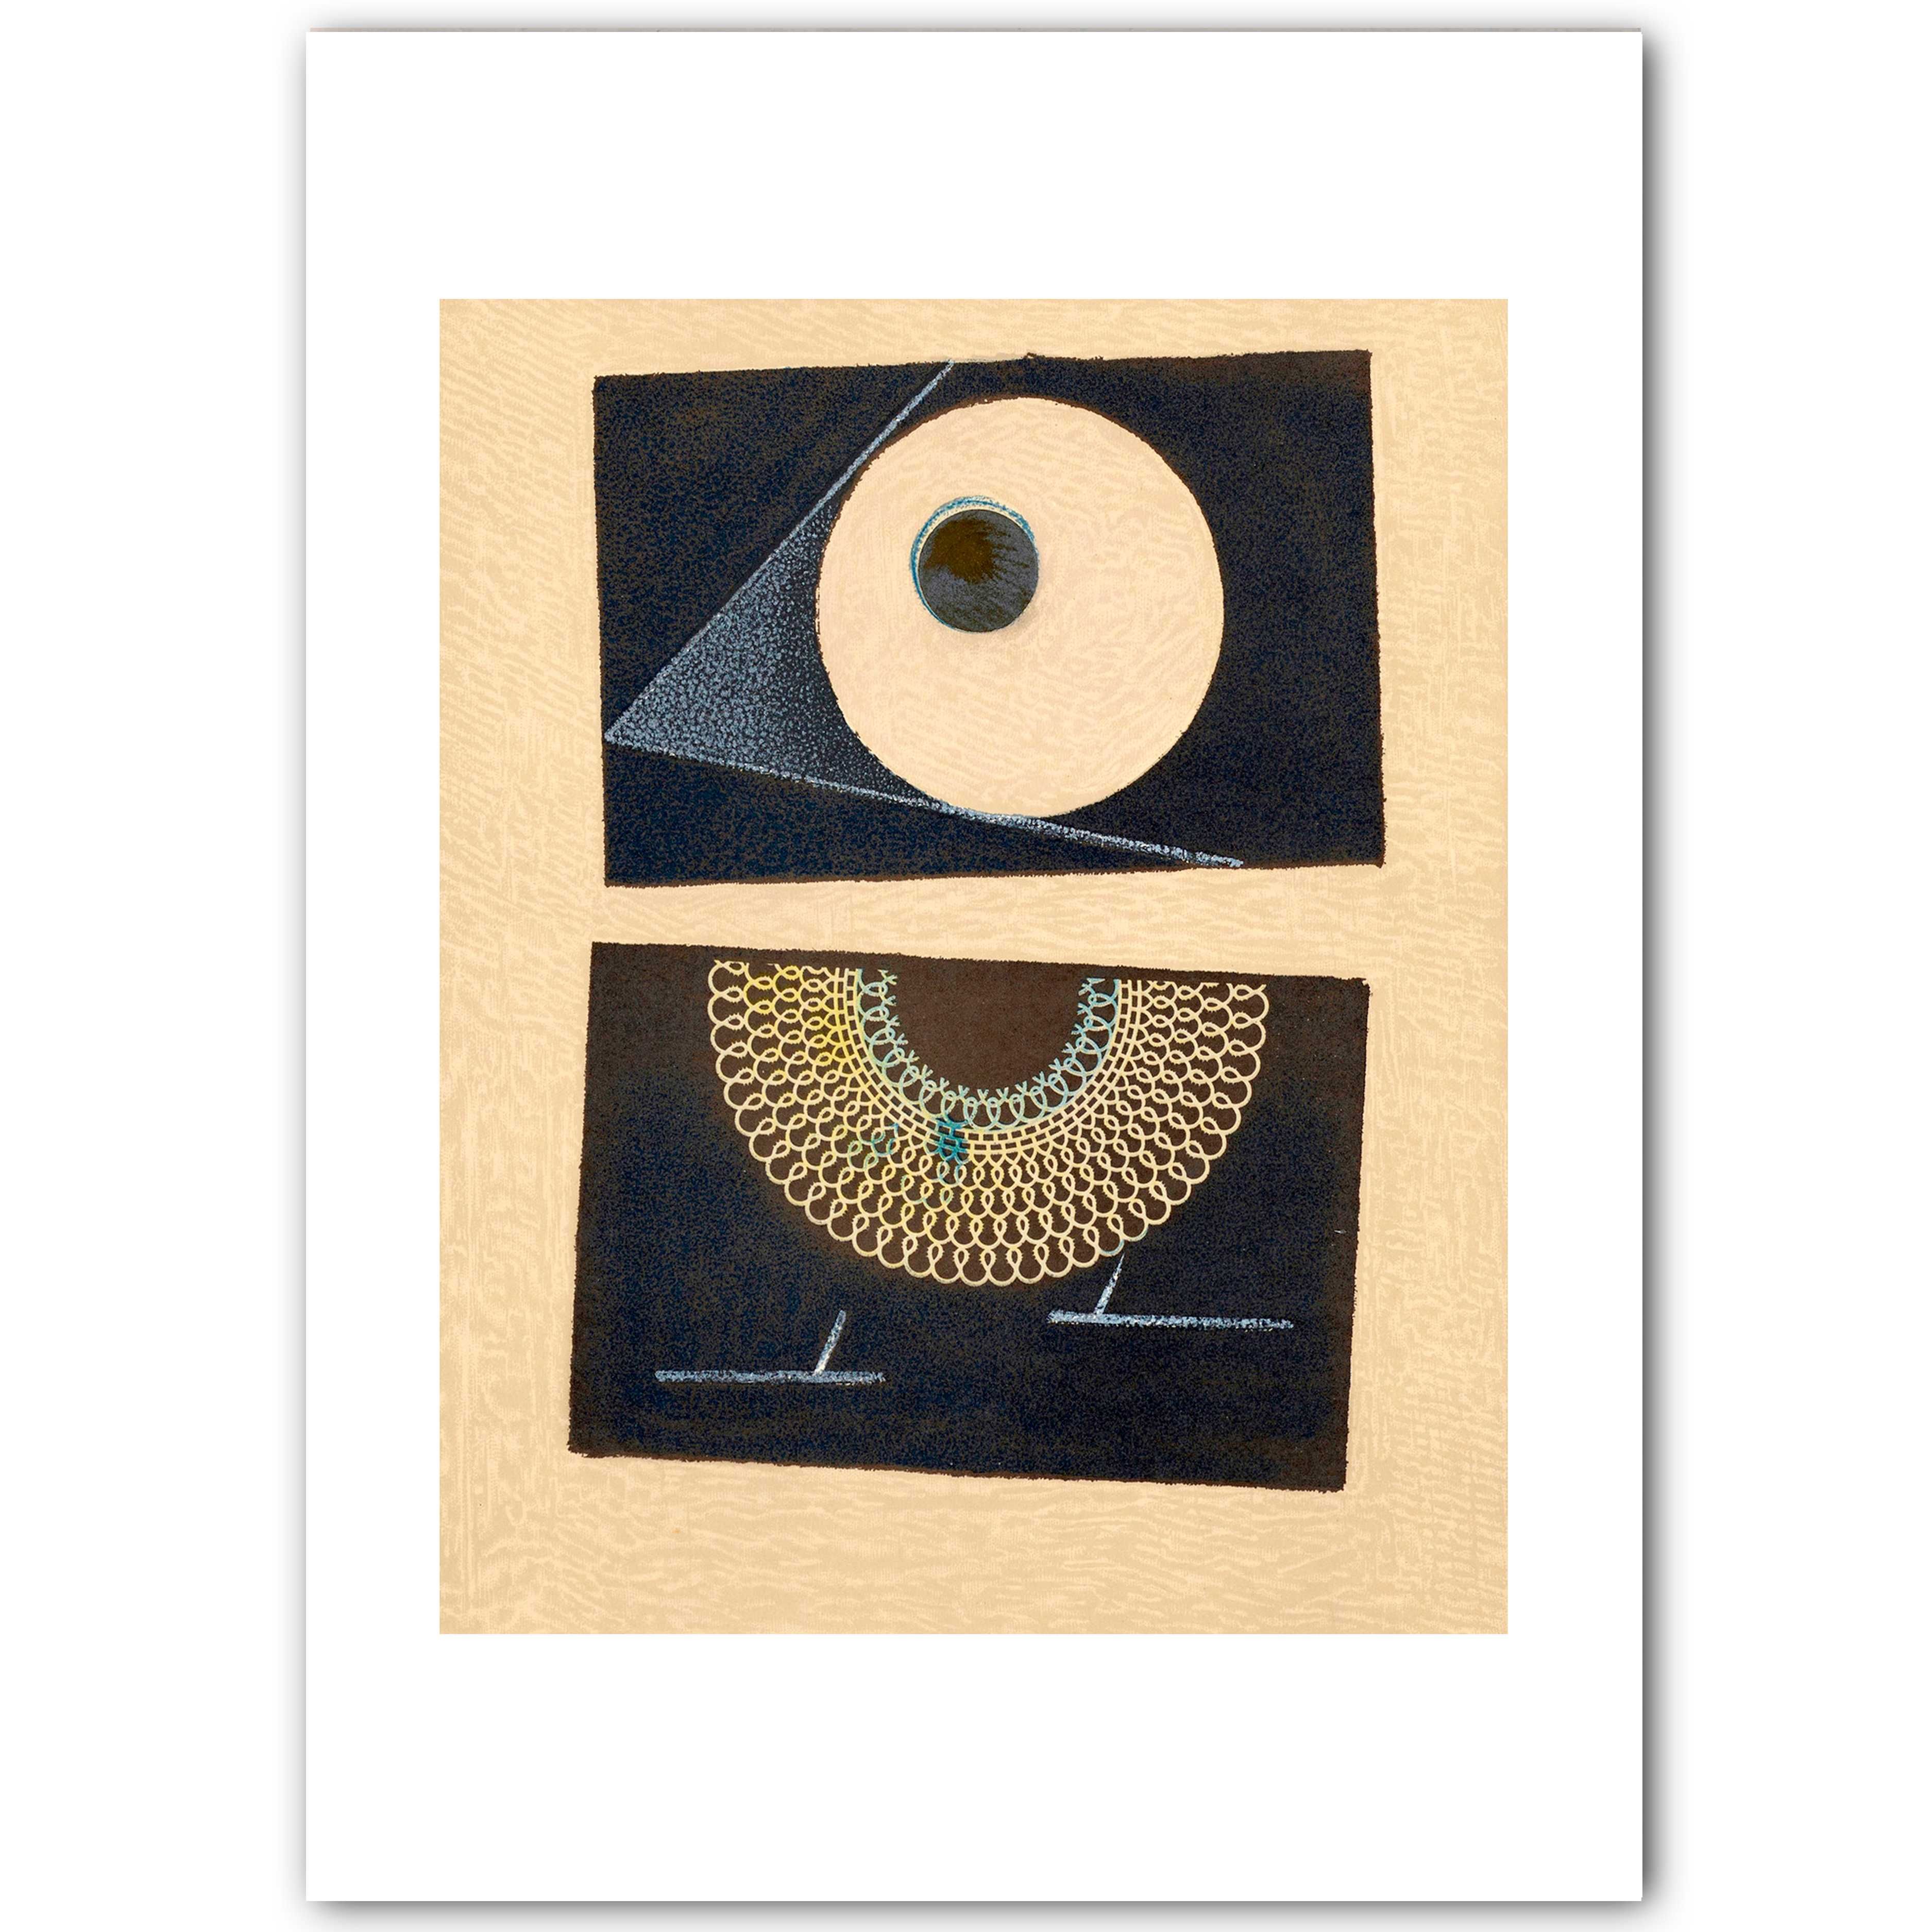 Max Ernst, reprodukcja litografii plakat 50x70